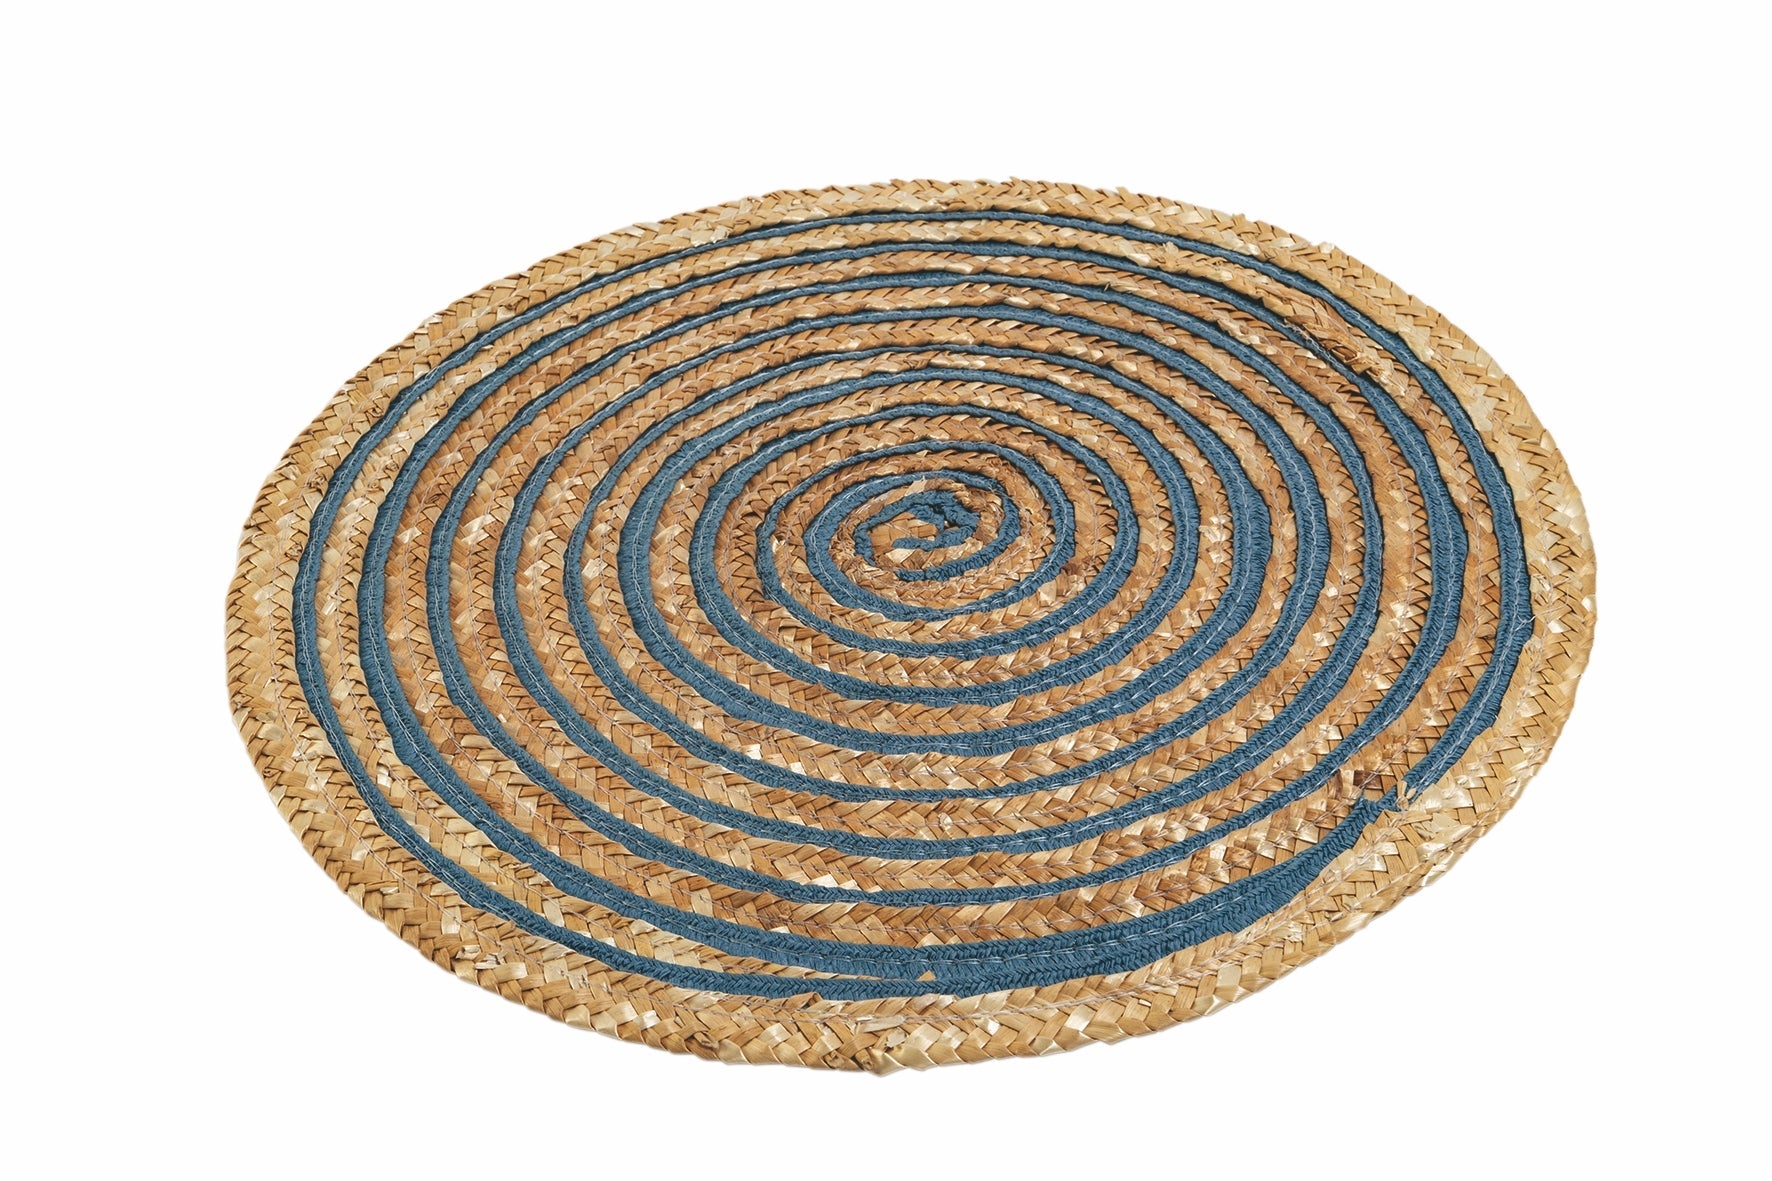 Set 6 tovagliette tonde Ø38 cm in fibra vegetale con spirale colorata  Spiral